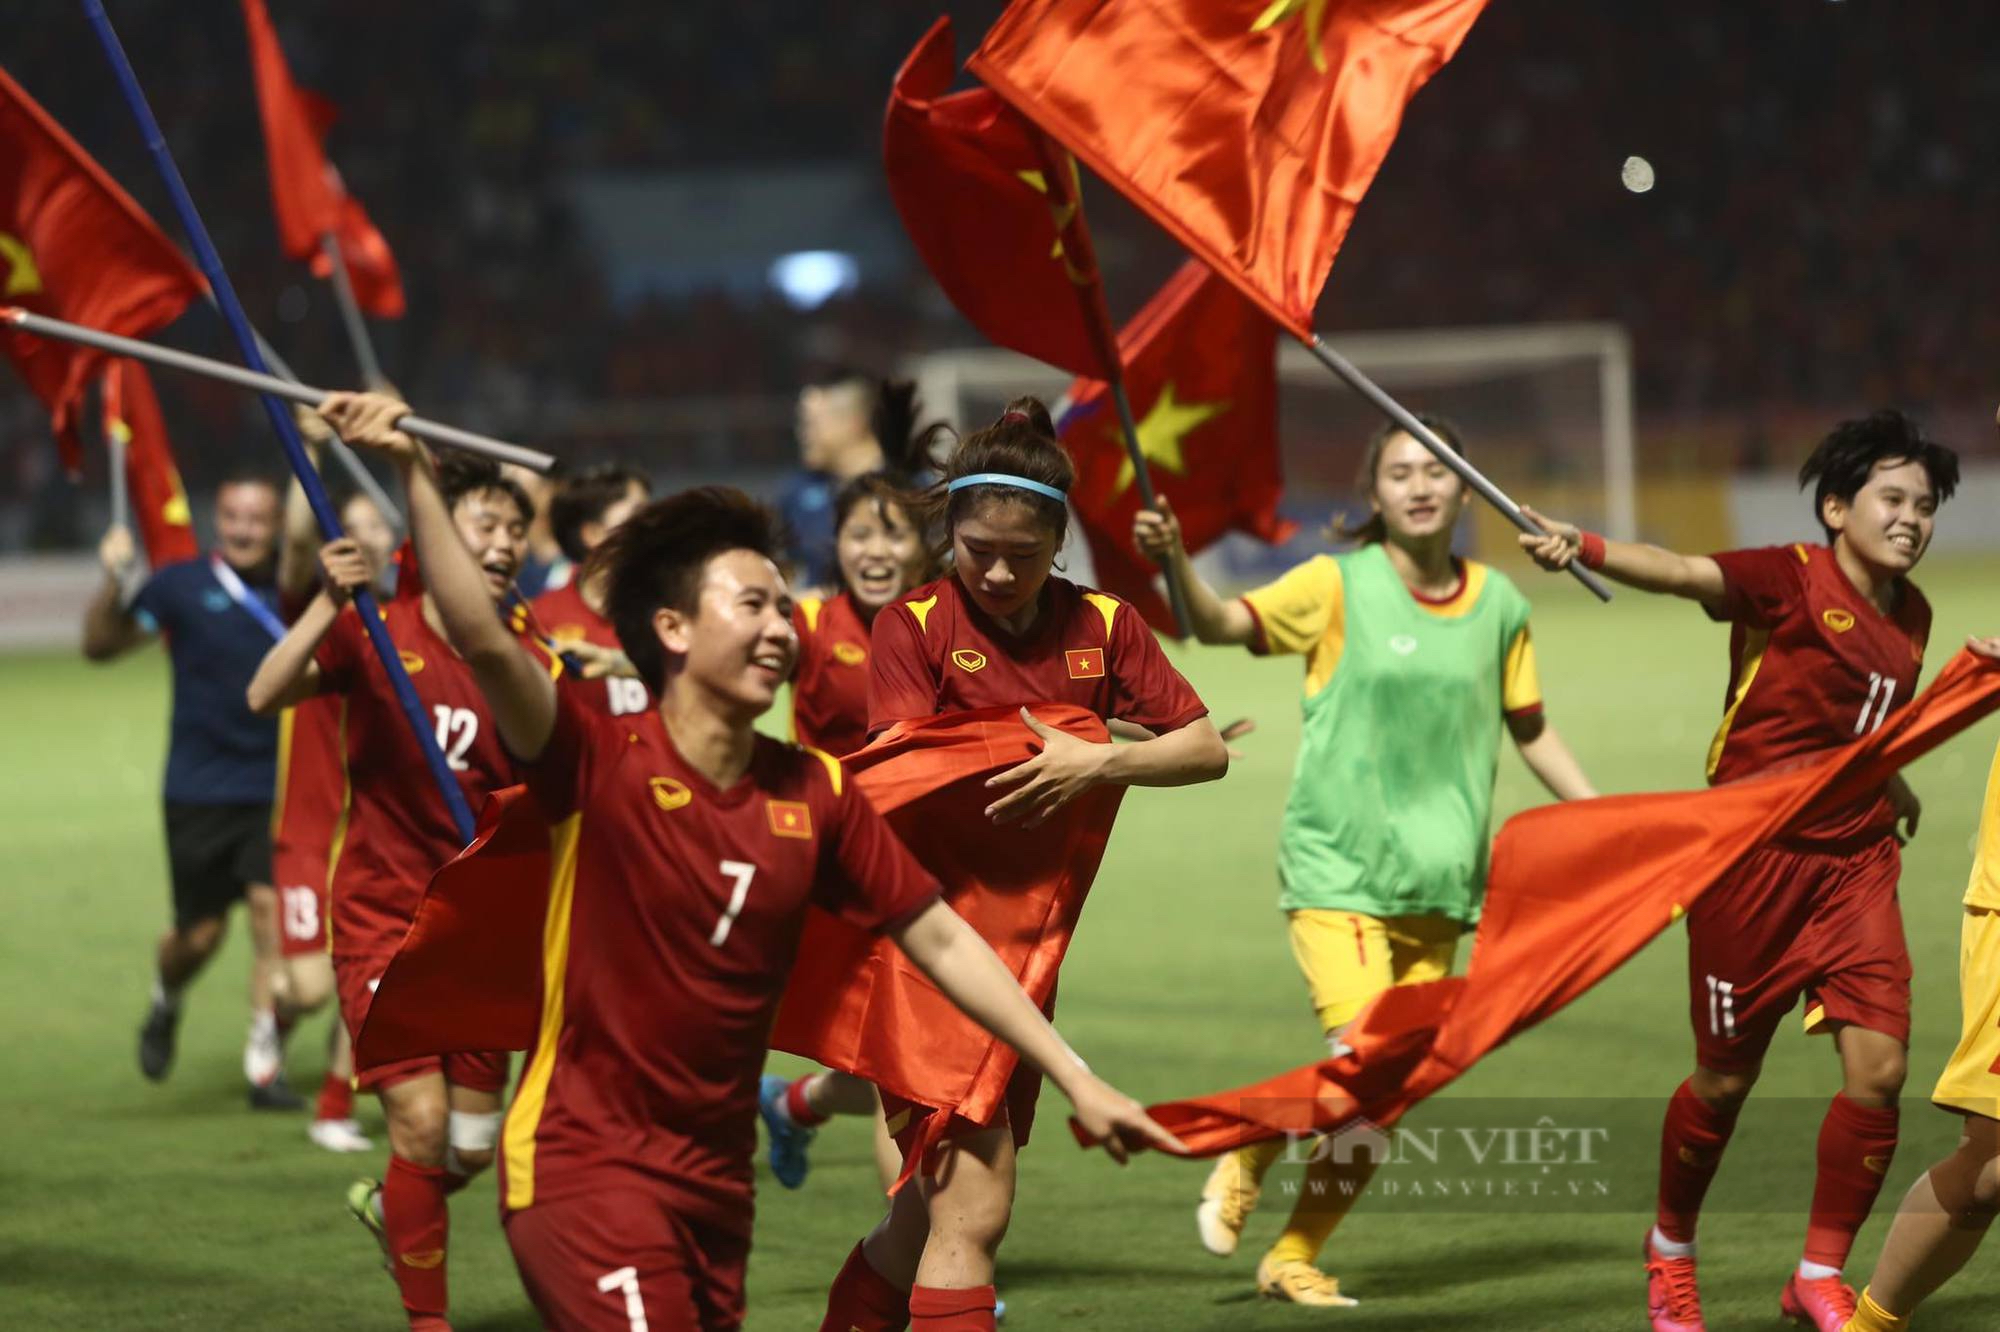 ĐT nữ Việt Nam phất cờ Tổ quốc là một khoảnh khắc hoành tráng nhất của bóng đá Việt Nam. Chúng ta hãy cùng thưởng thức hình ảnh này để cổ vũ cho những cô gái đồng hương, và ghi nhận những thành tựu vĩ đại của Việt Nam trong thế giới bóng đá.